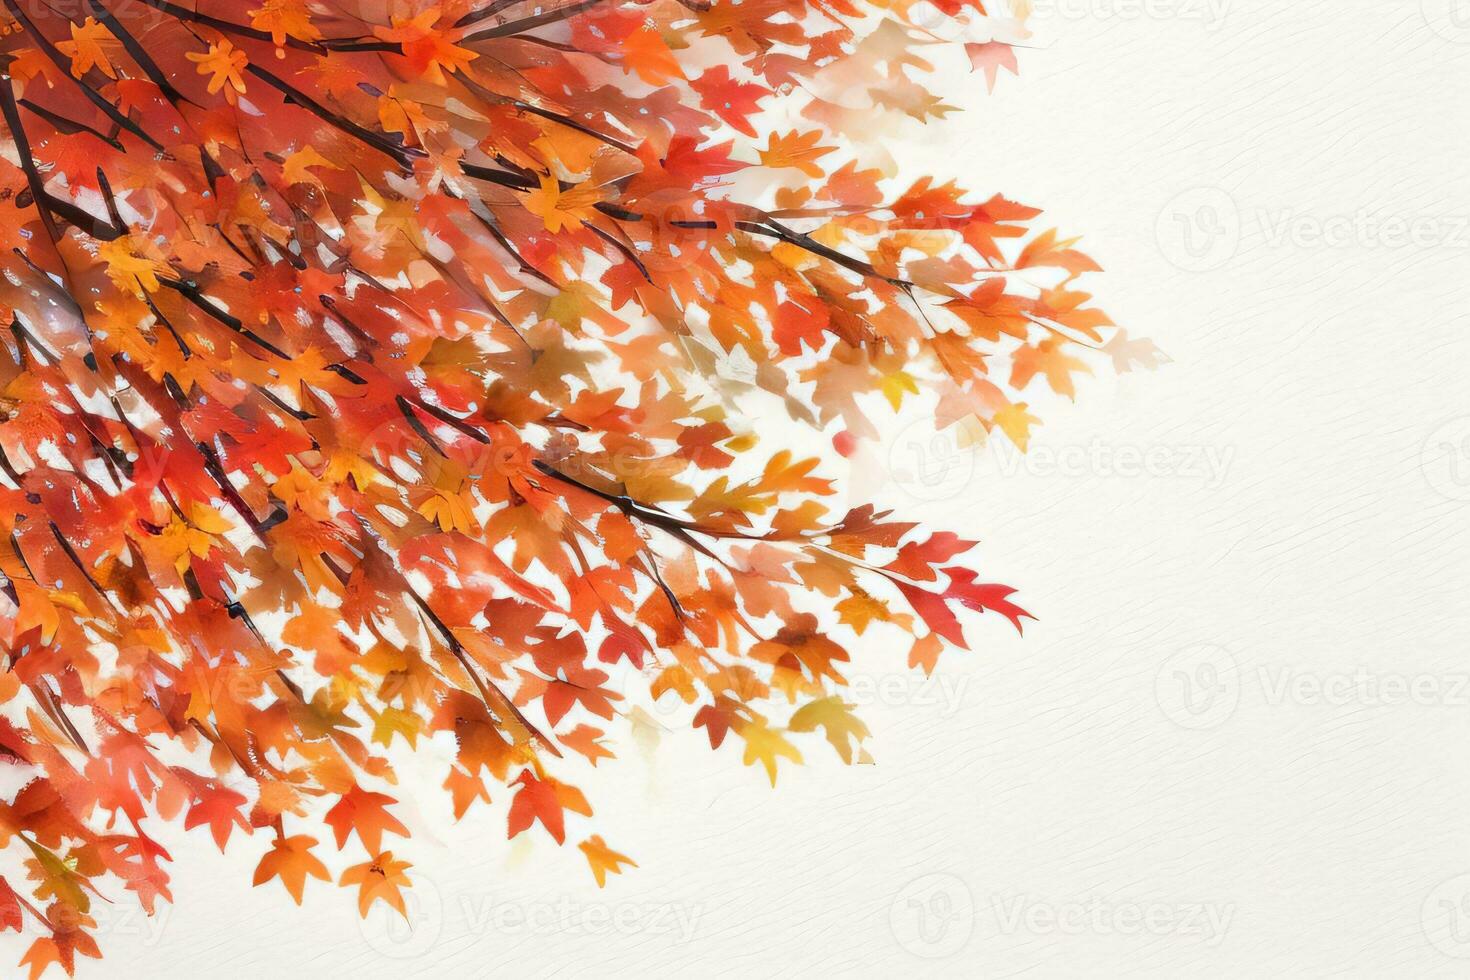 sfondo con acquerello autunno le foglie foto